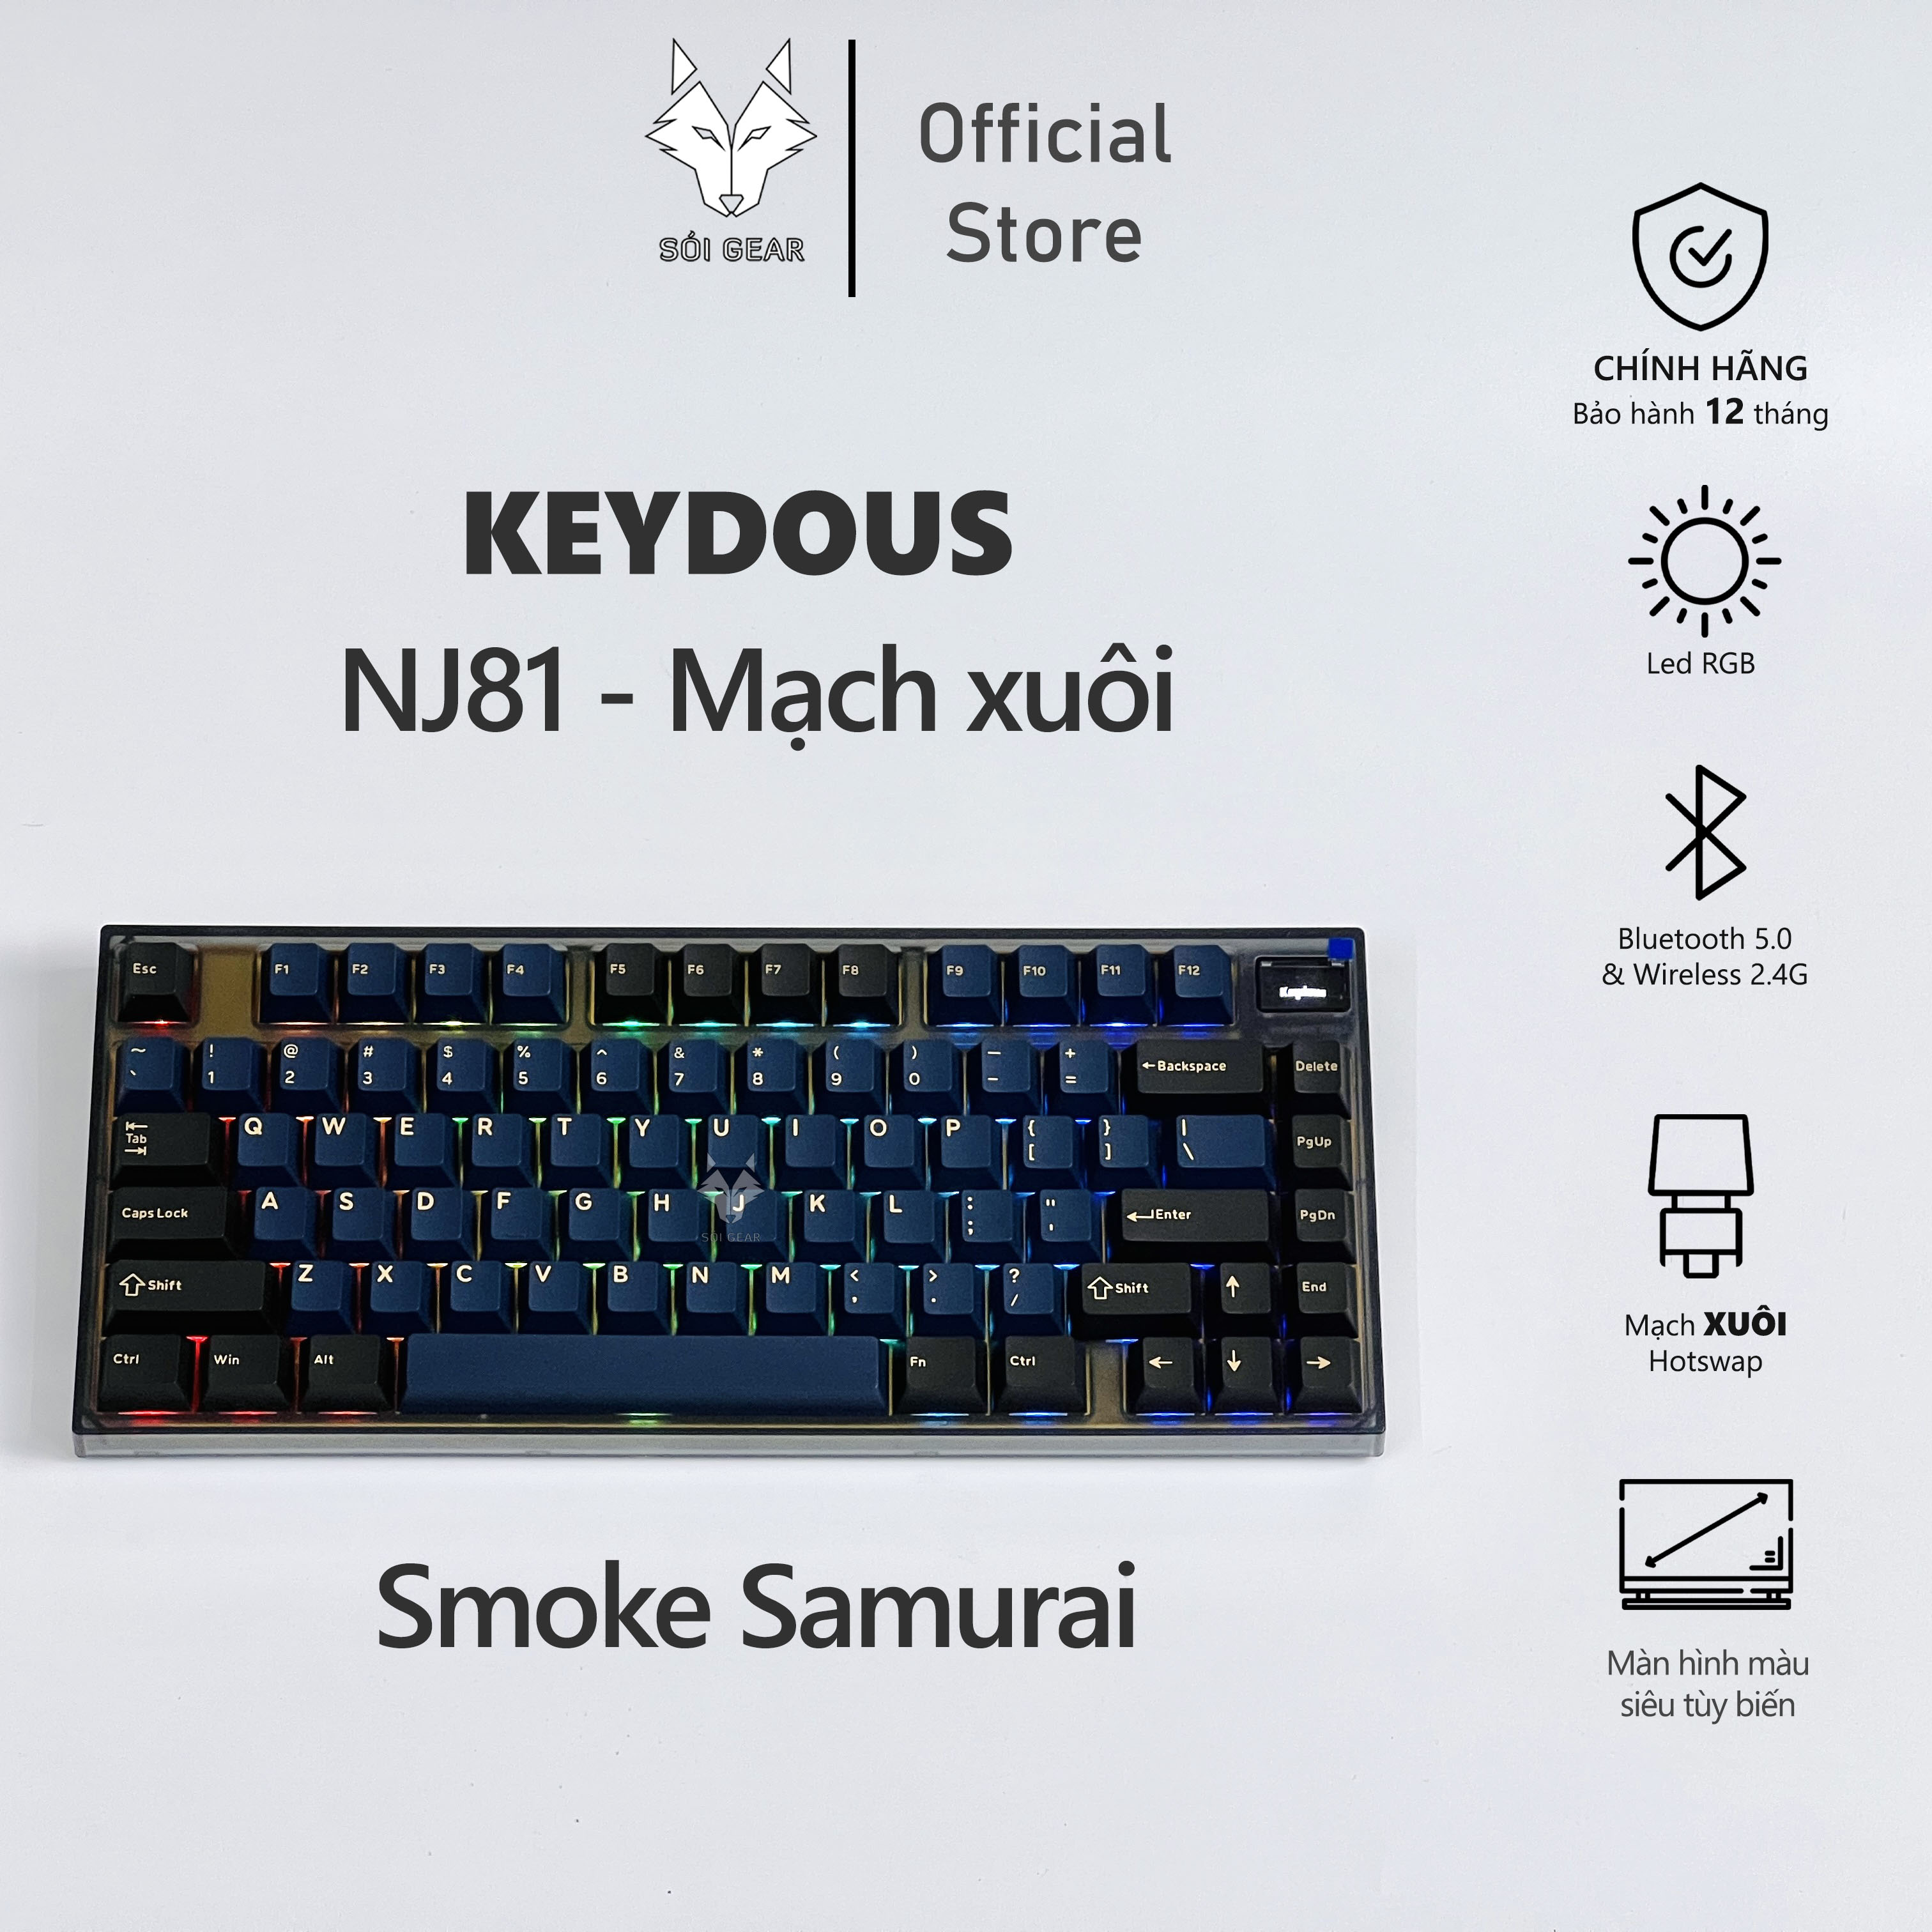 Hãy thưởng thức hình ảnh liên quan đến Keydous Nj81 với thiết kế độc đáo, nổi bật và chất lượng vượt trội. Keydous Nj81 là một sản phẩm chắc chắn sẽ làm bạn hài lòng và đem lại trải nghiệm thú vị trong công việc và cuộc sống hàng ngày của bạn.